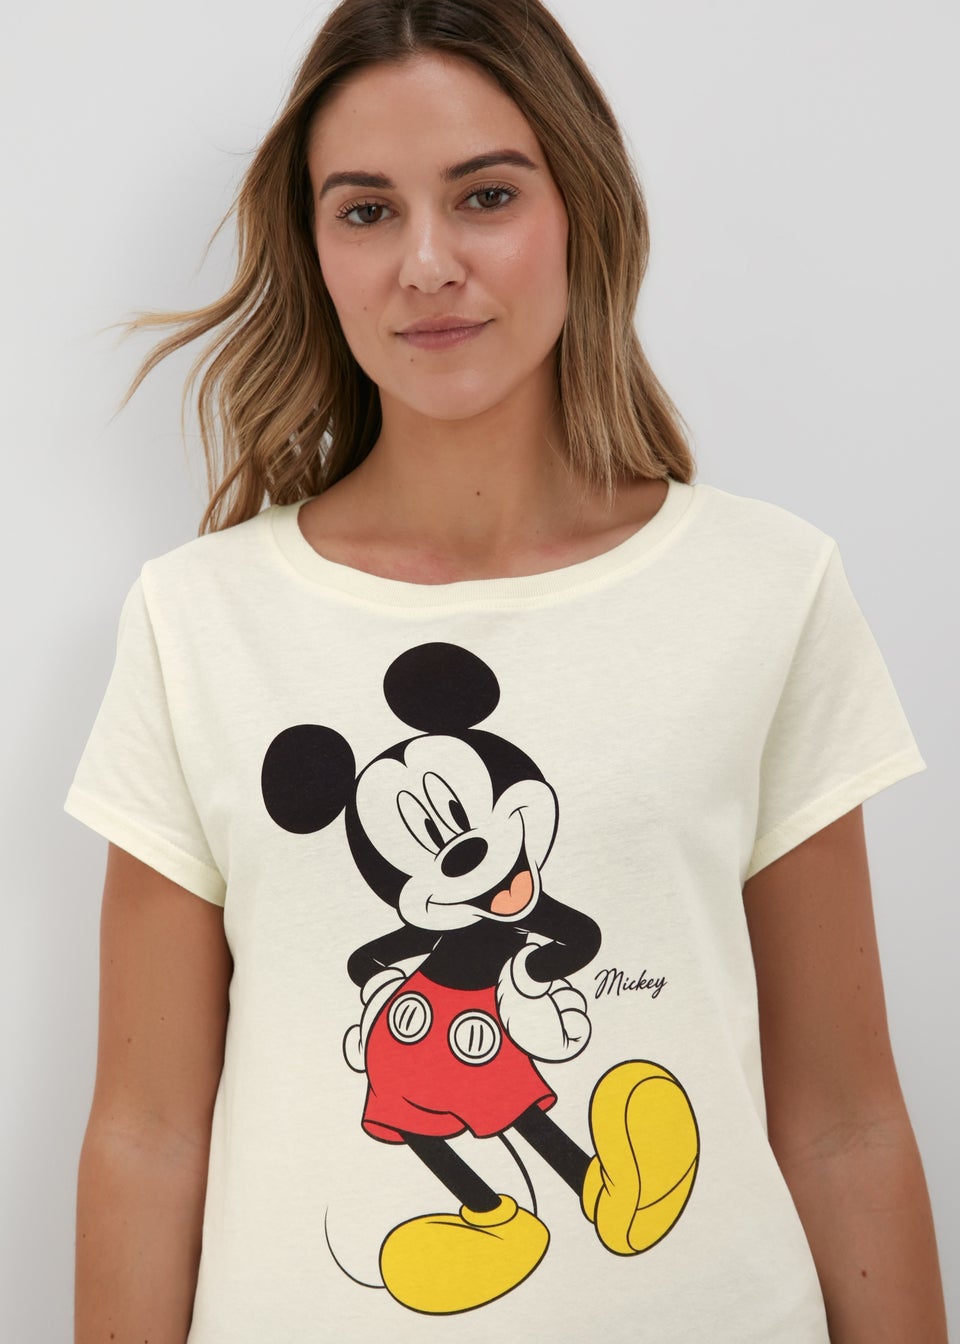 Disney Mickey Mouse Pyjamas